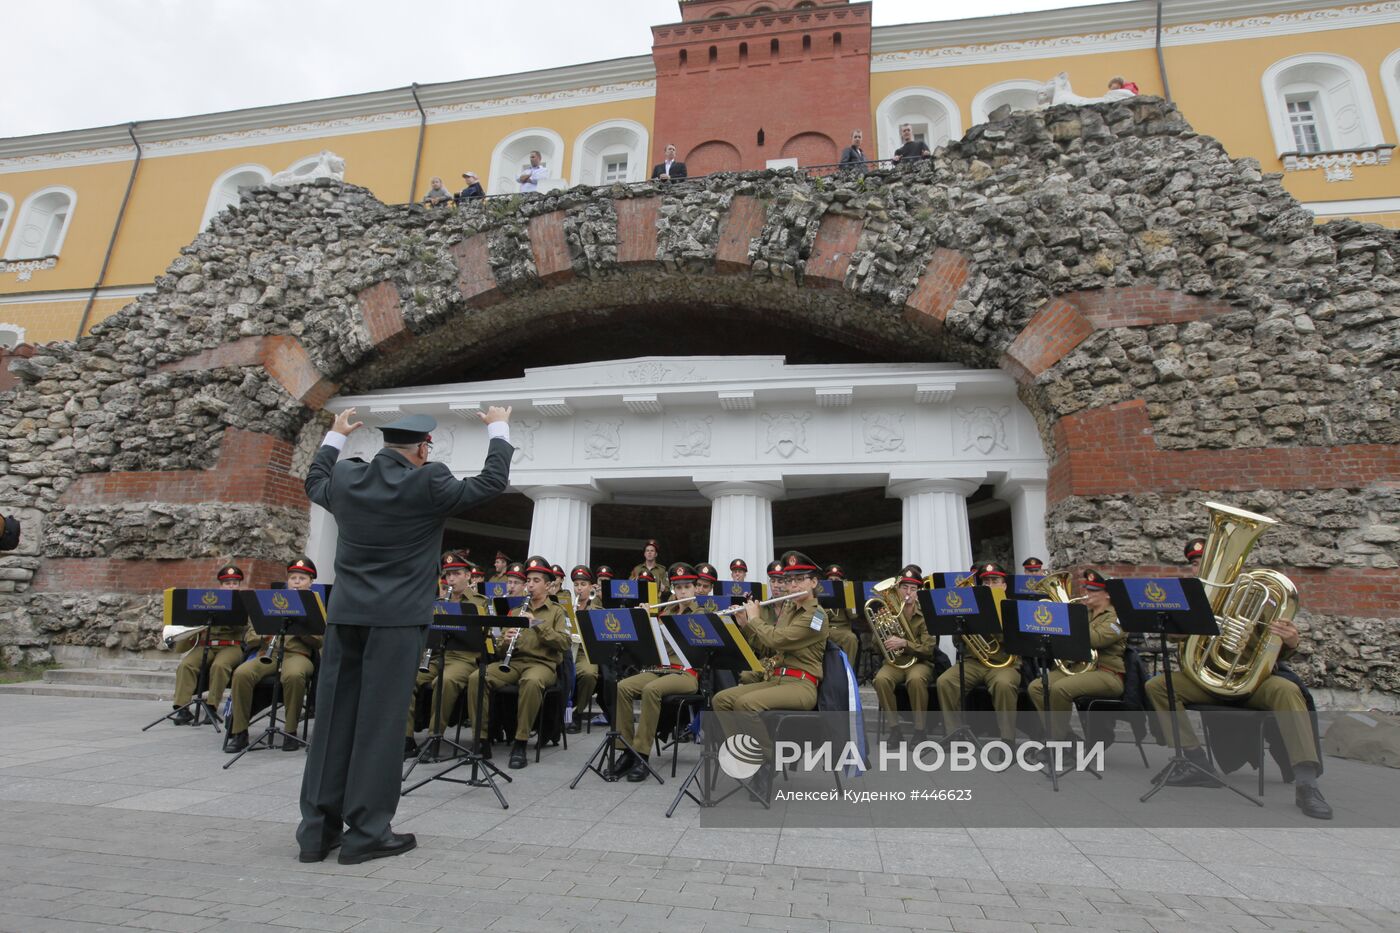 Фестиваль военно-музыкальных оркестров "Спасская башня"